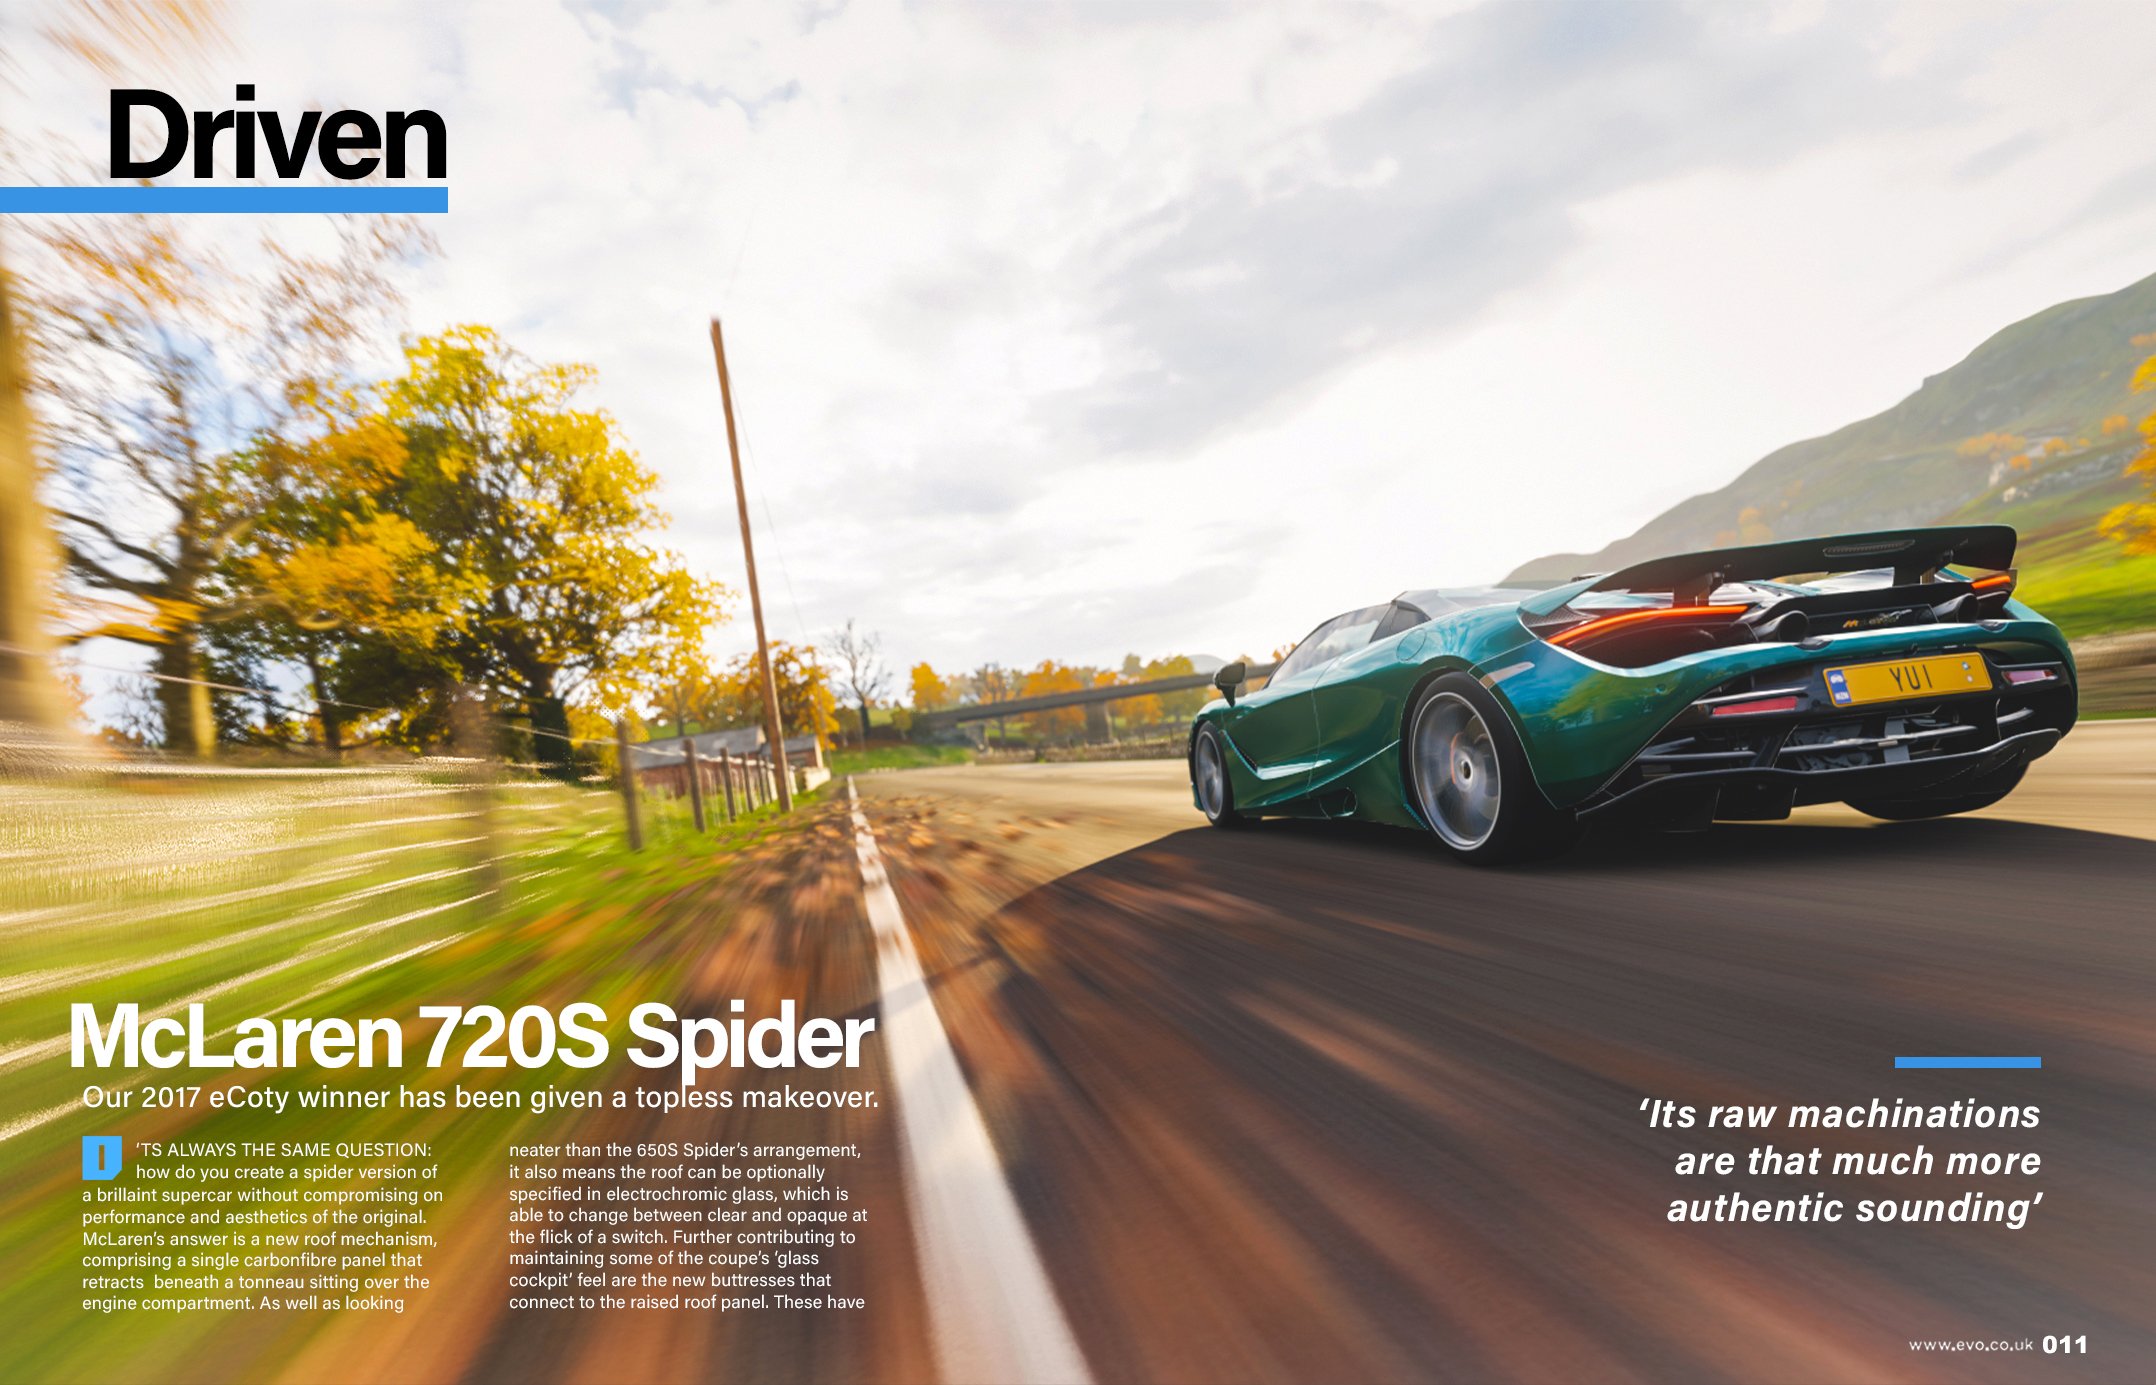 File:Dan Greenawalt unveiling Forza Motorsport 3 at E309.jpg